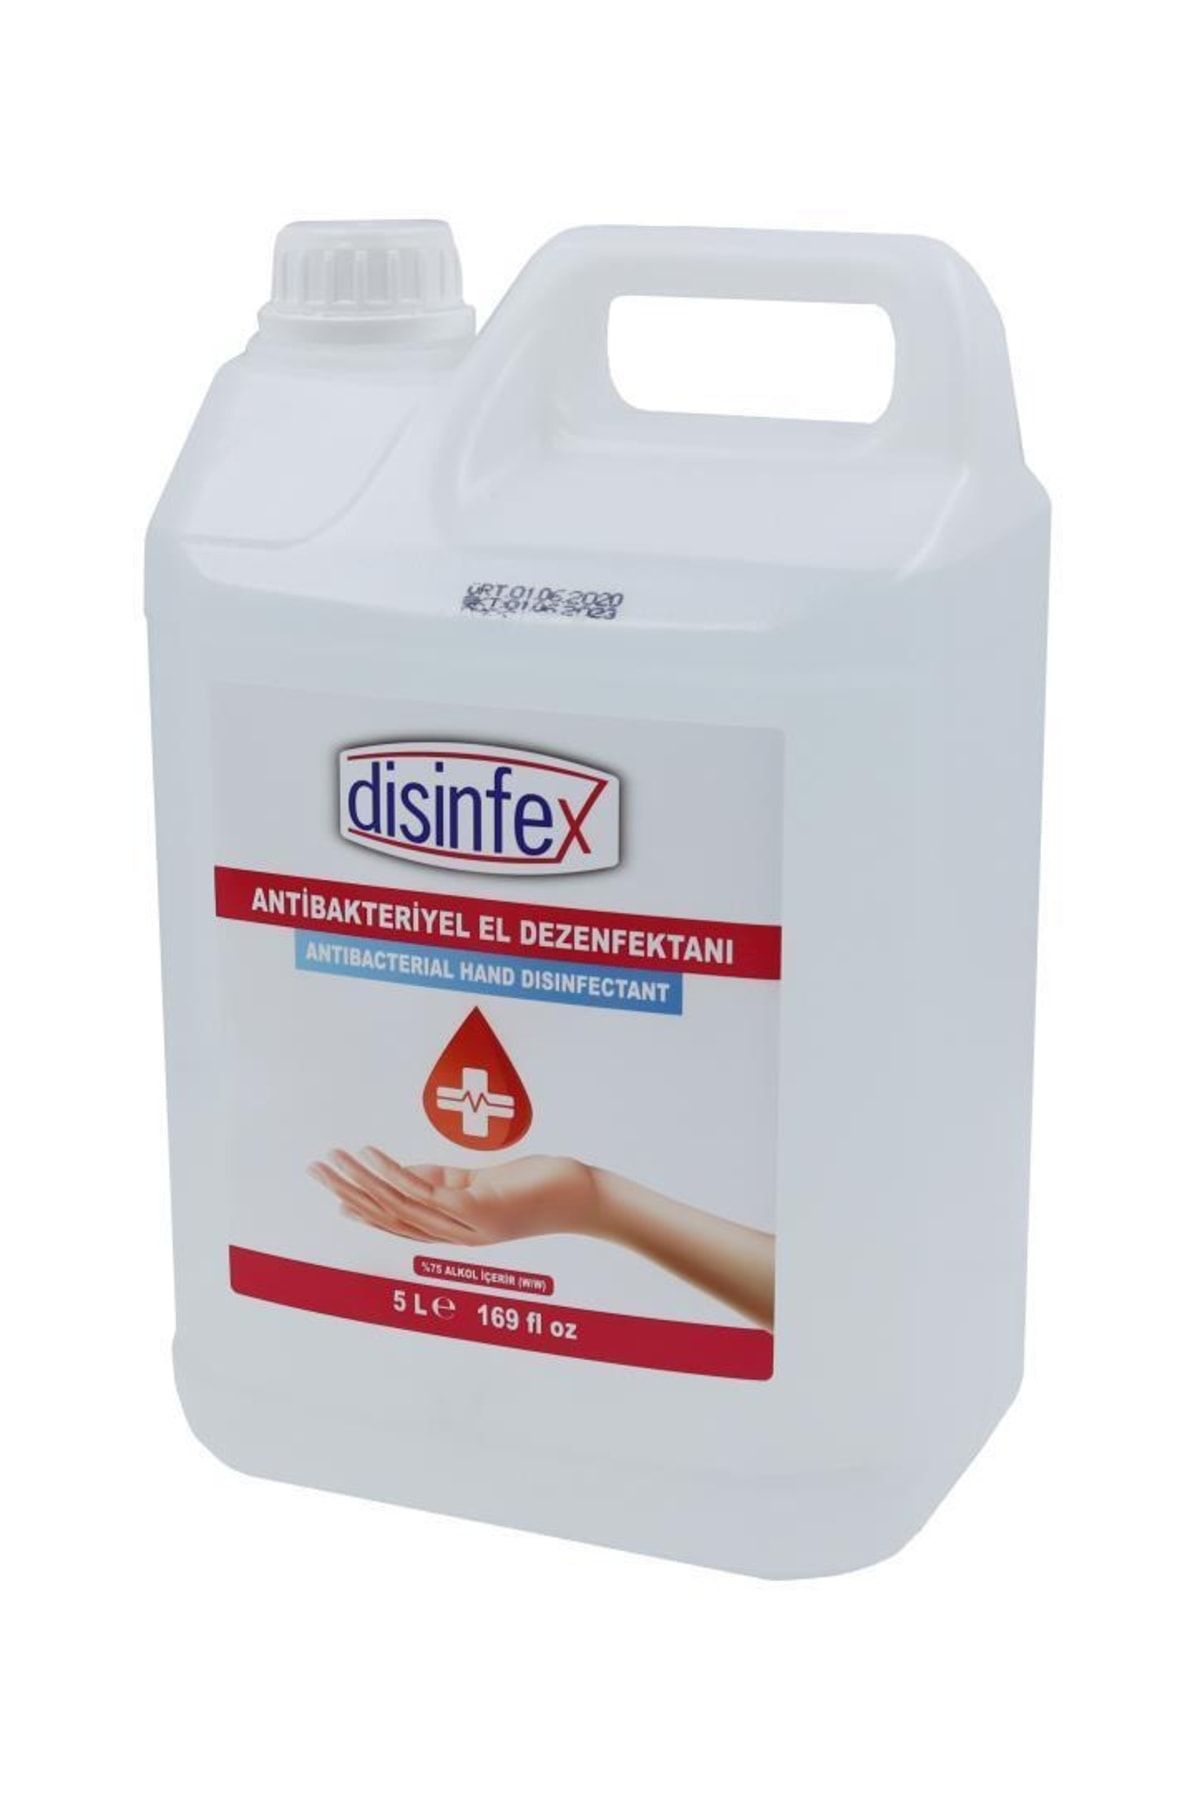 Disinfex 5 Litre Alkol Bazlı El Dezenfektanı Antibakteriyel